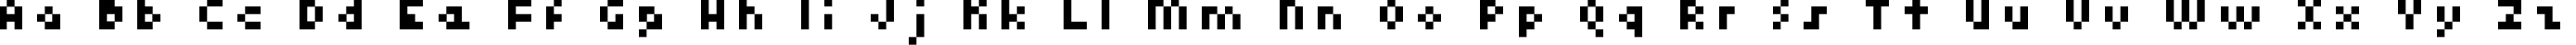 Пример написания английского алфавита шрифтом kroeger 04_56